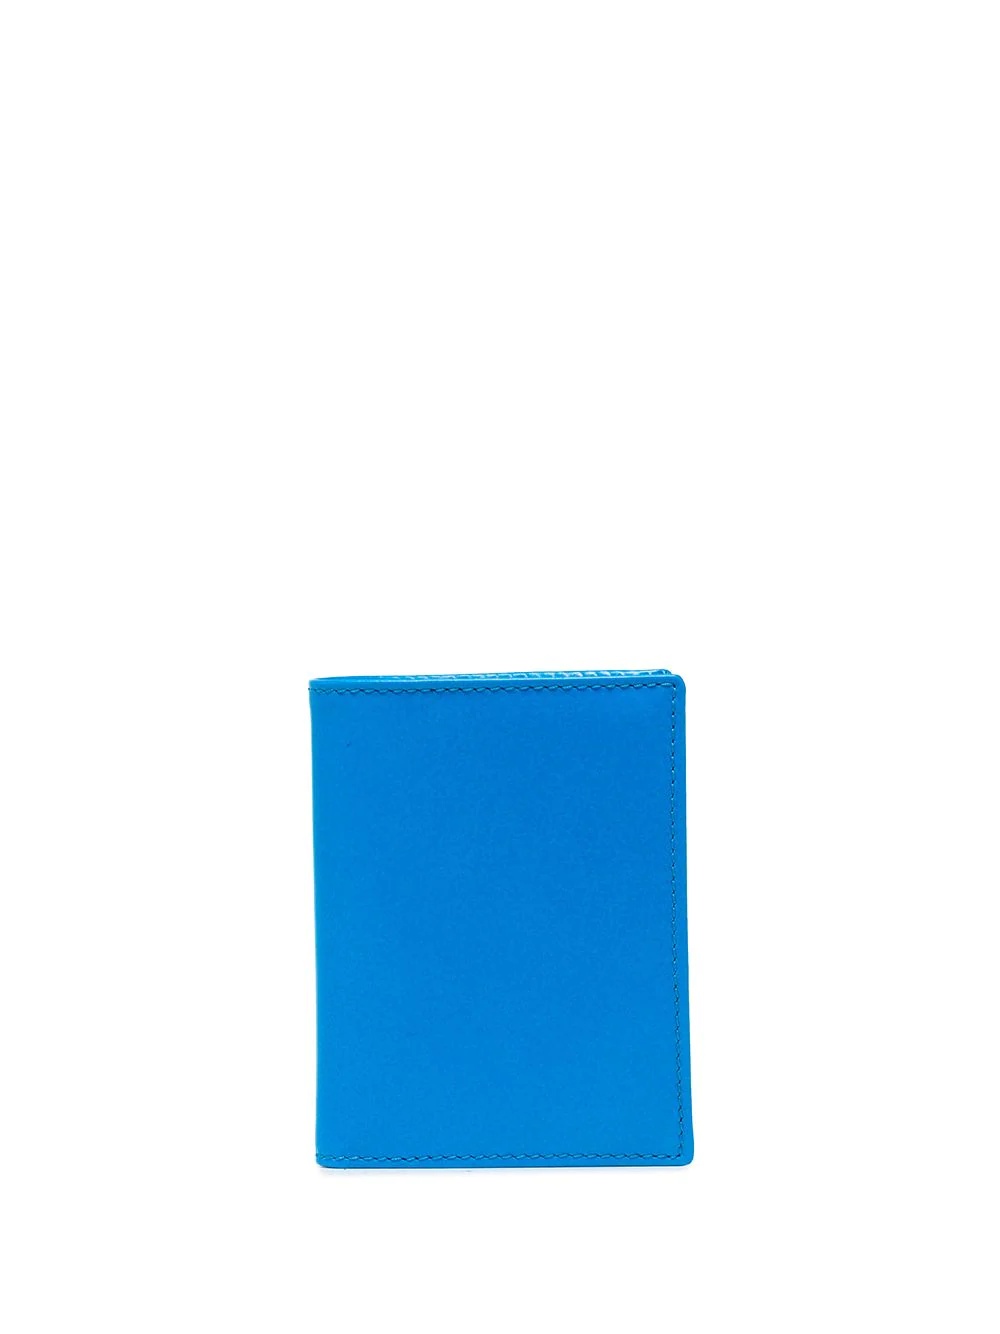 Super Fluo leather cardholder - 1